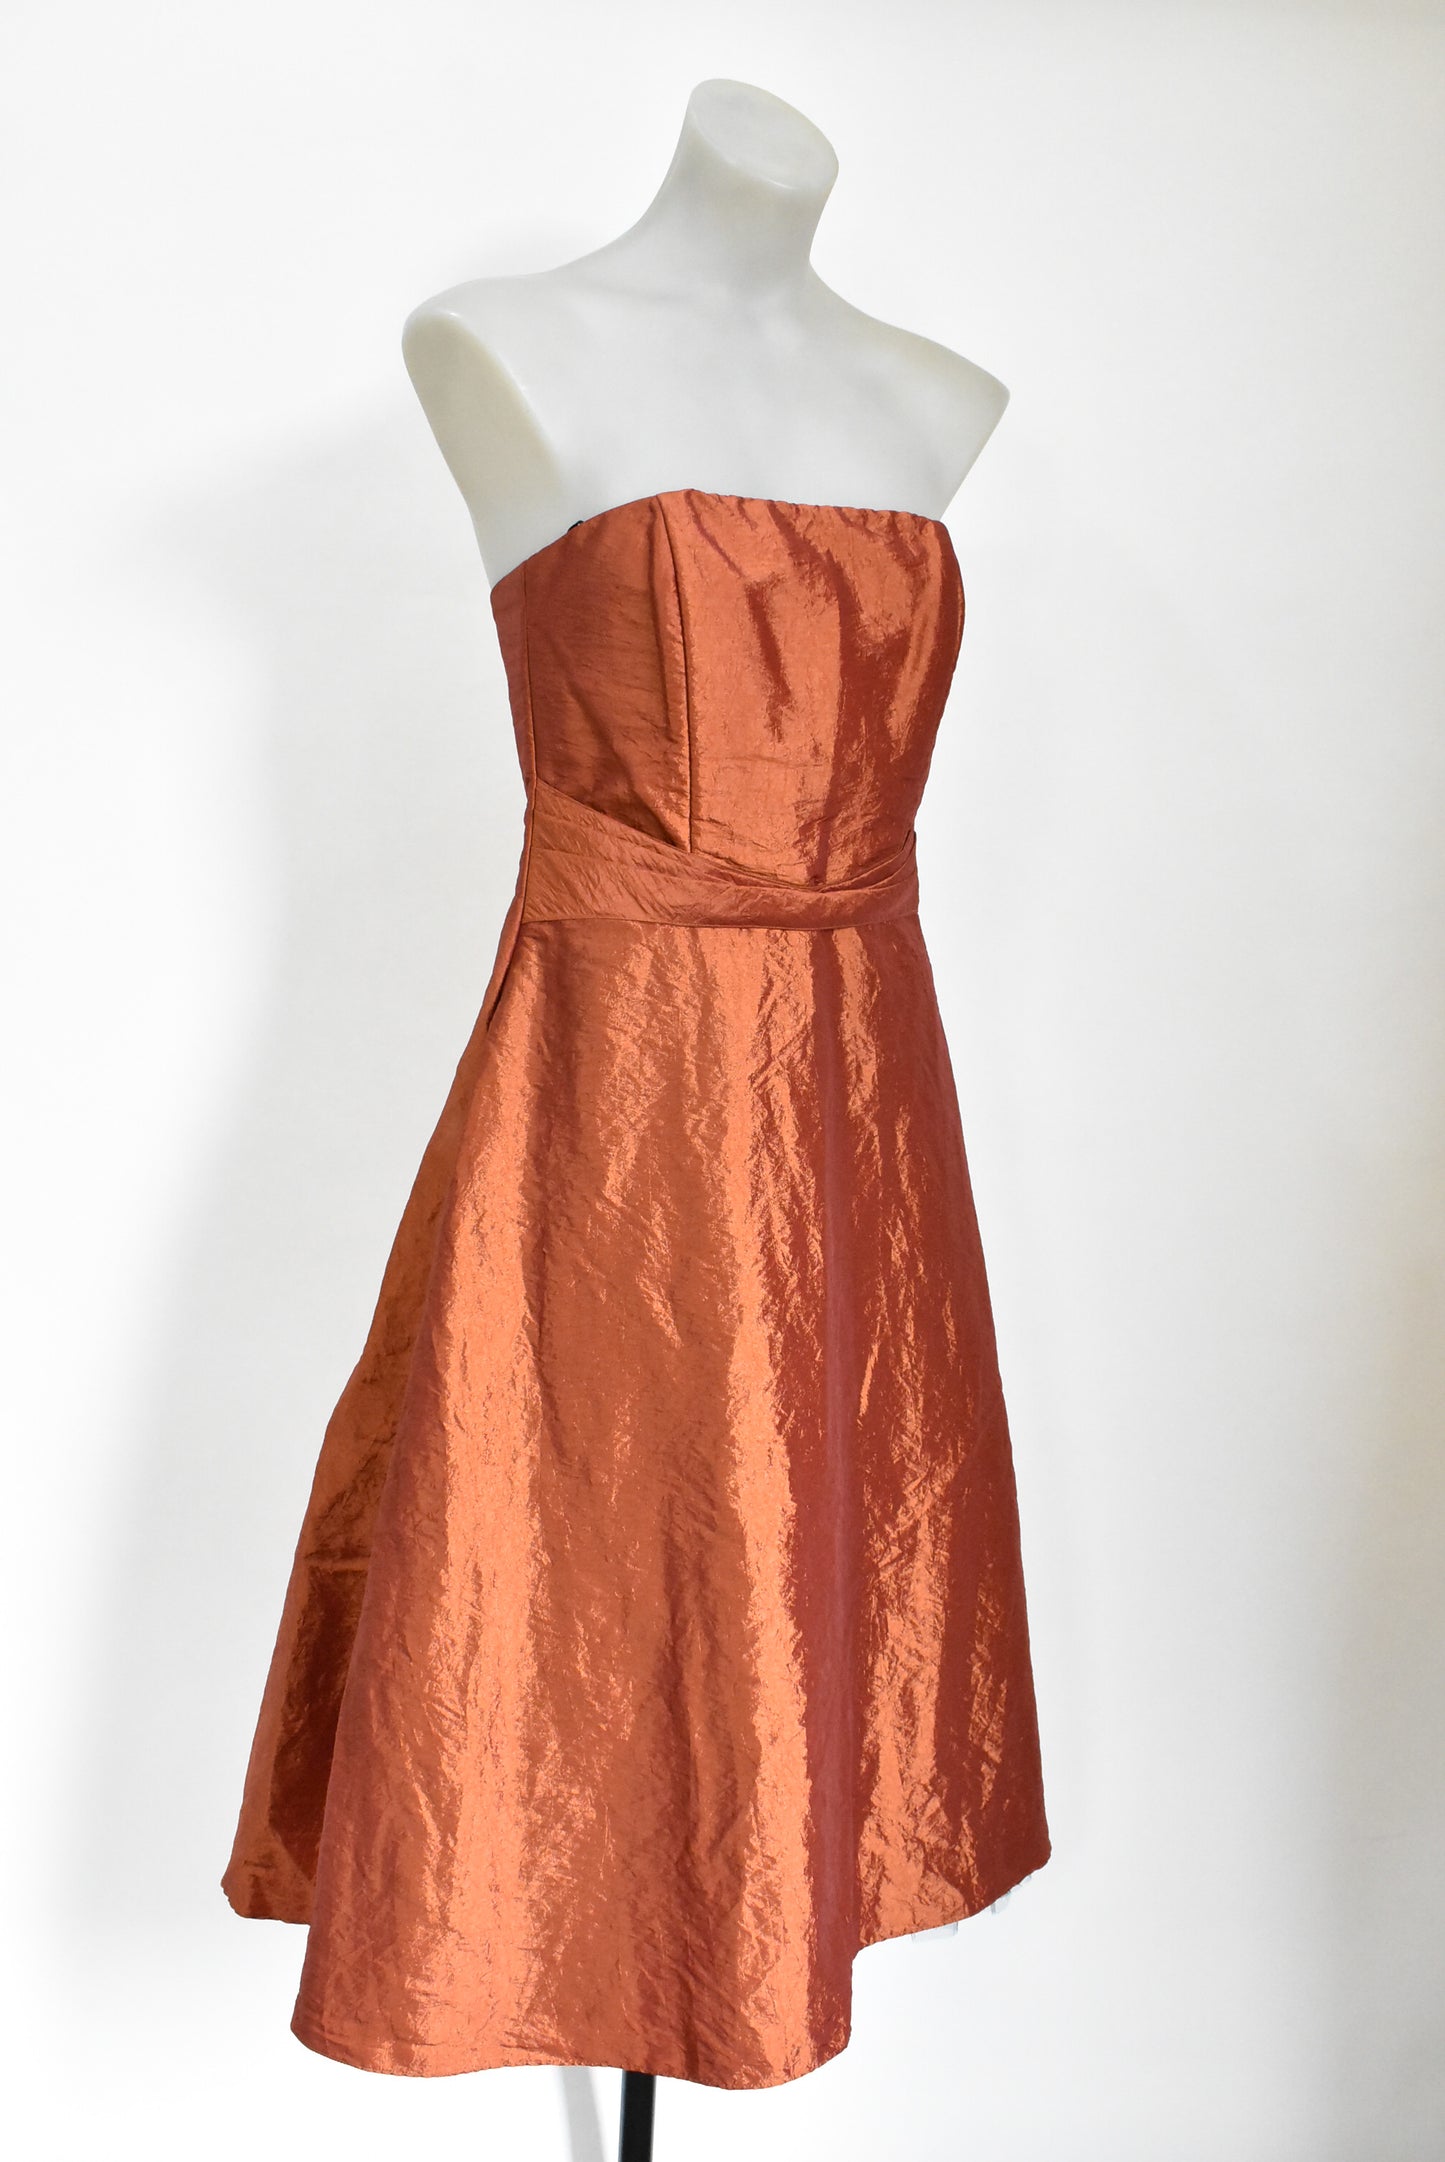 Jetaime retro strapless copper evening dress, 14